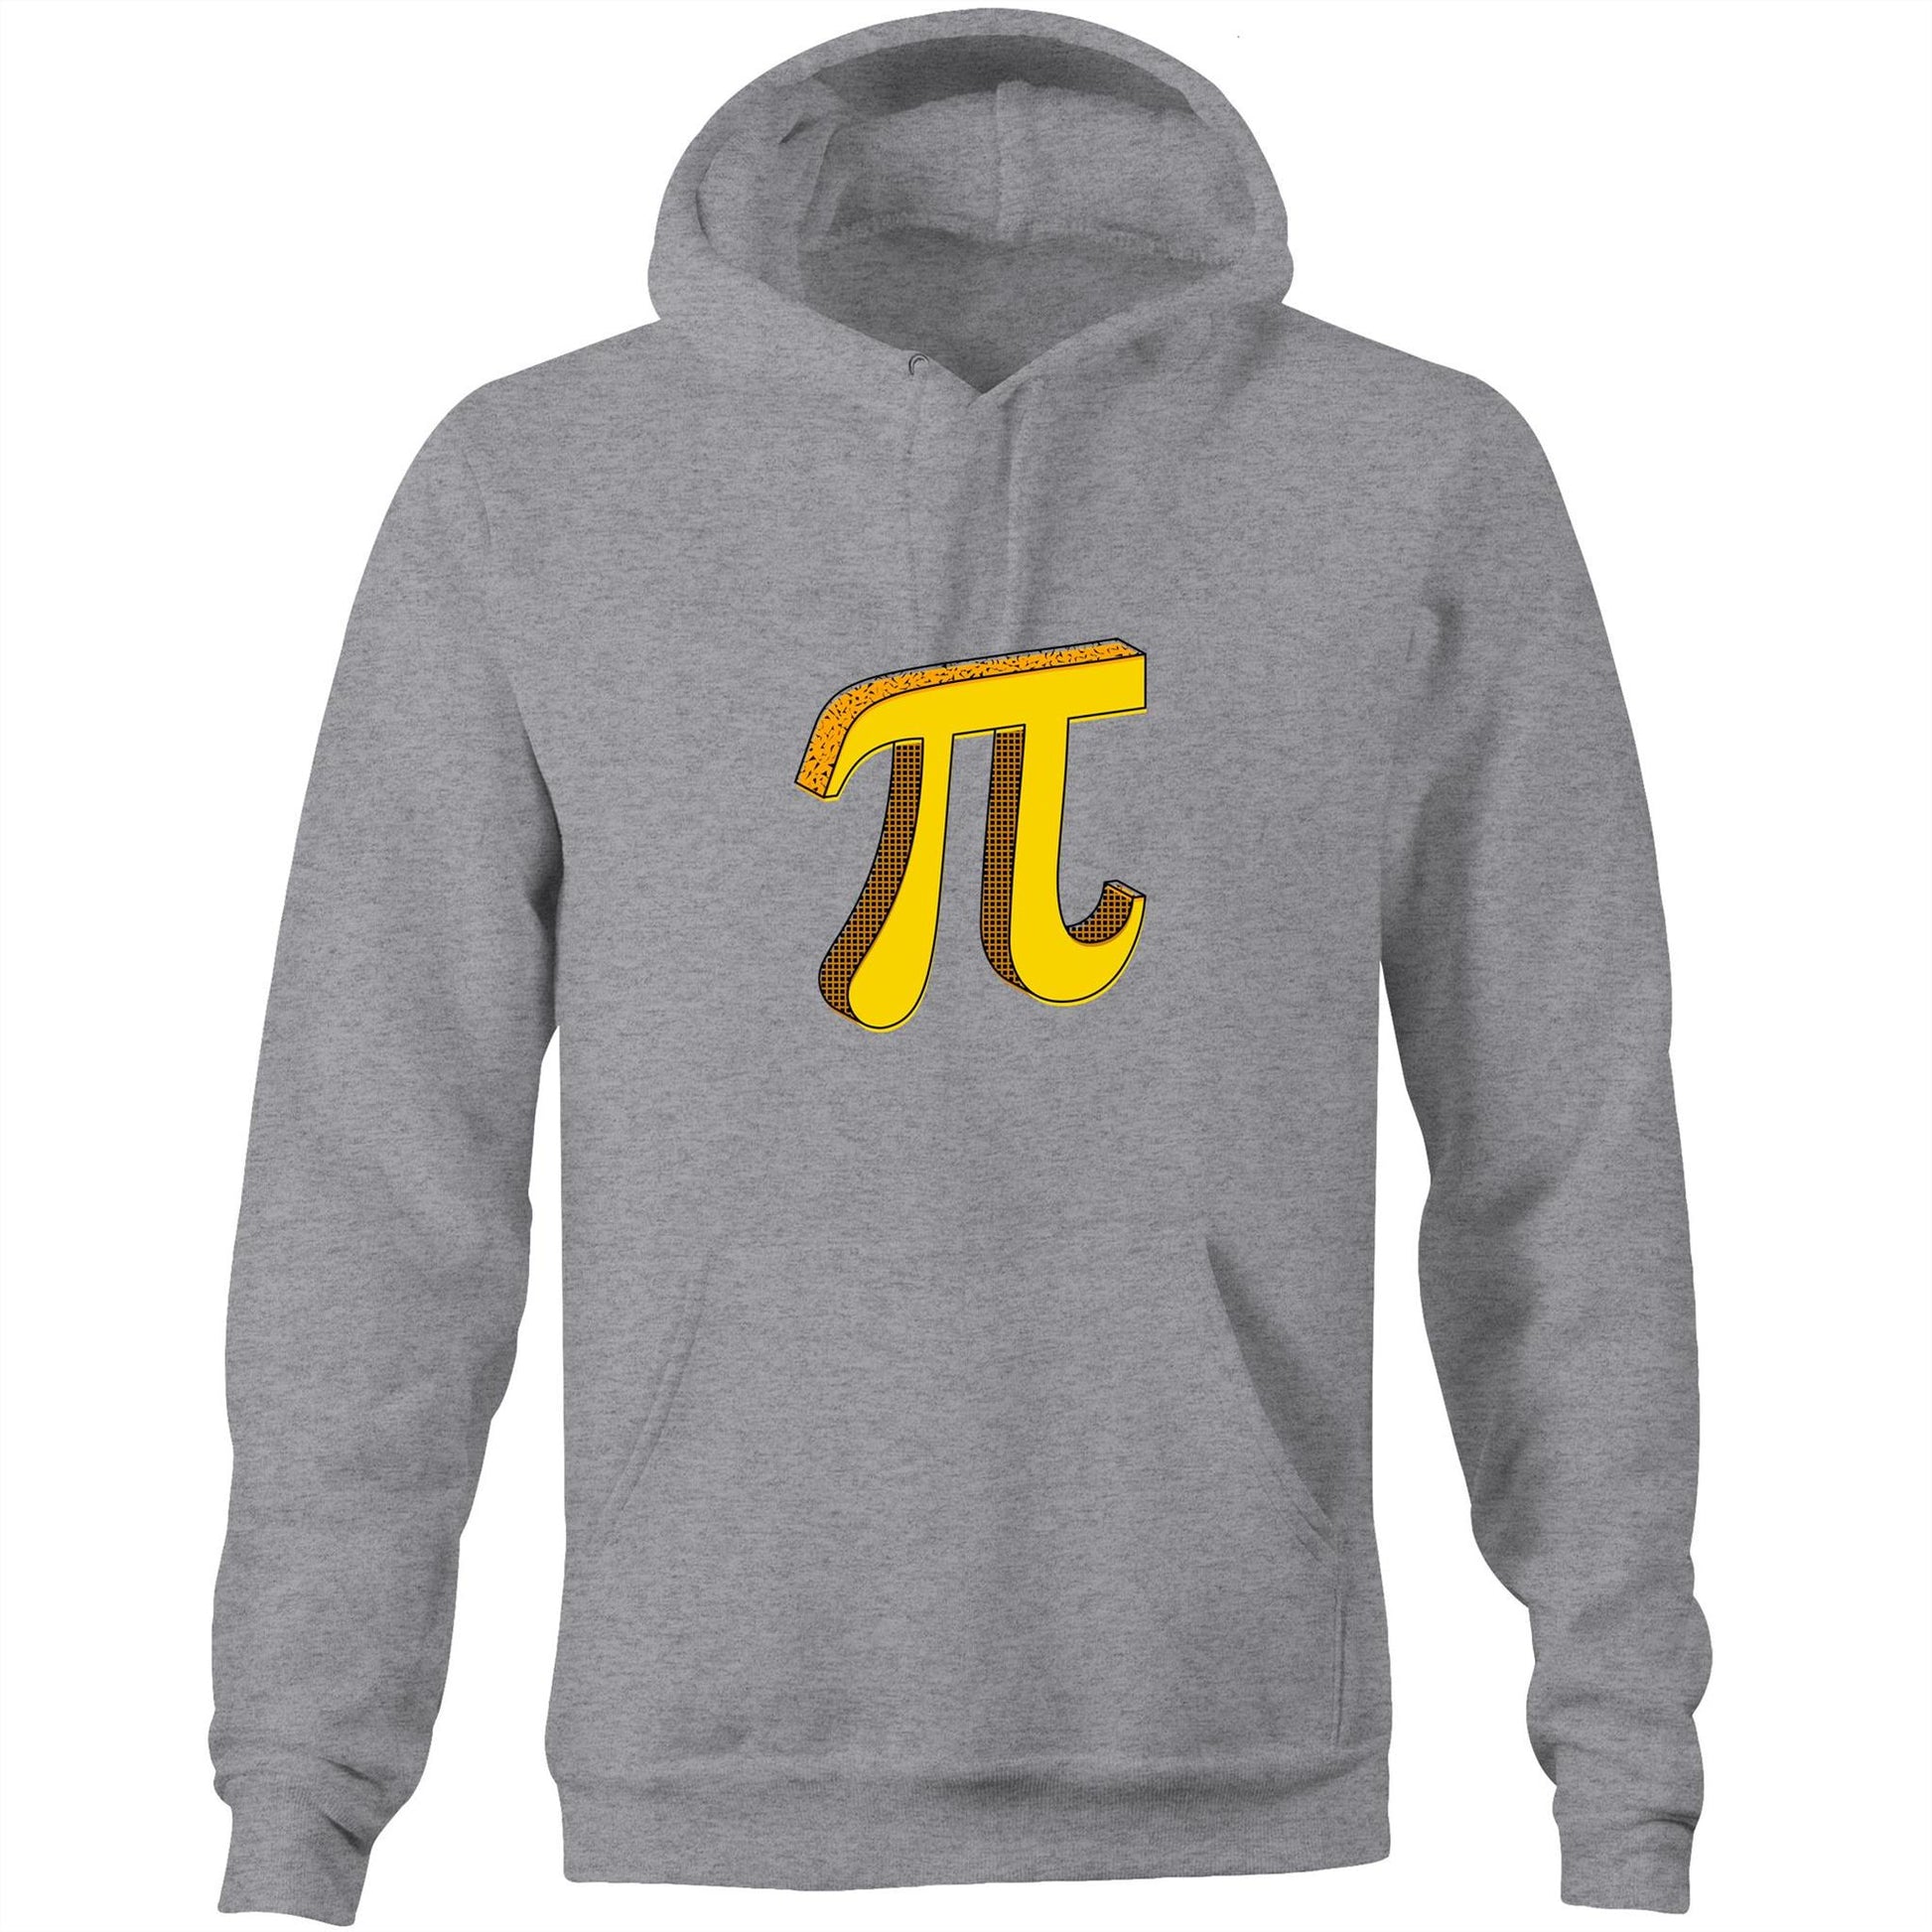 Pi - Pocket Hoodie Sweatshirt Grey Marle Hoodie Maths Science